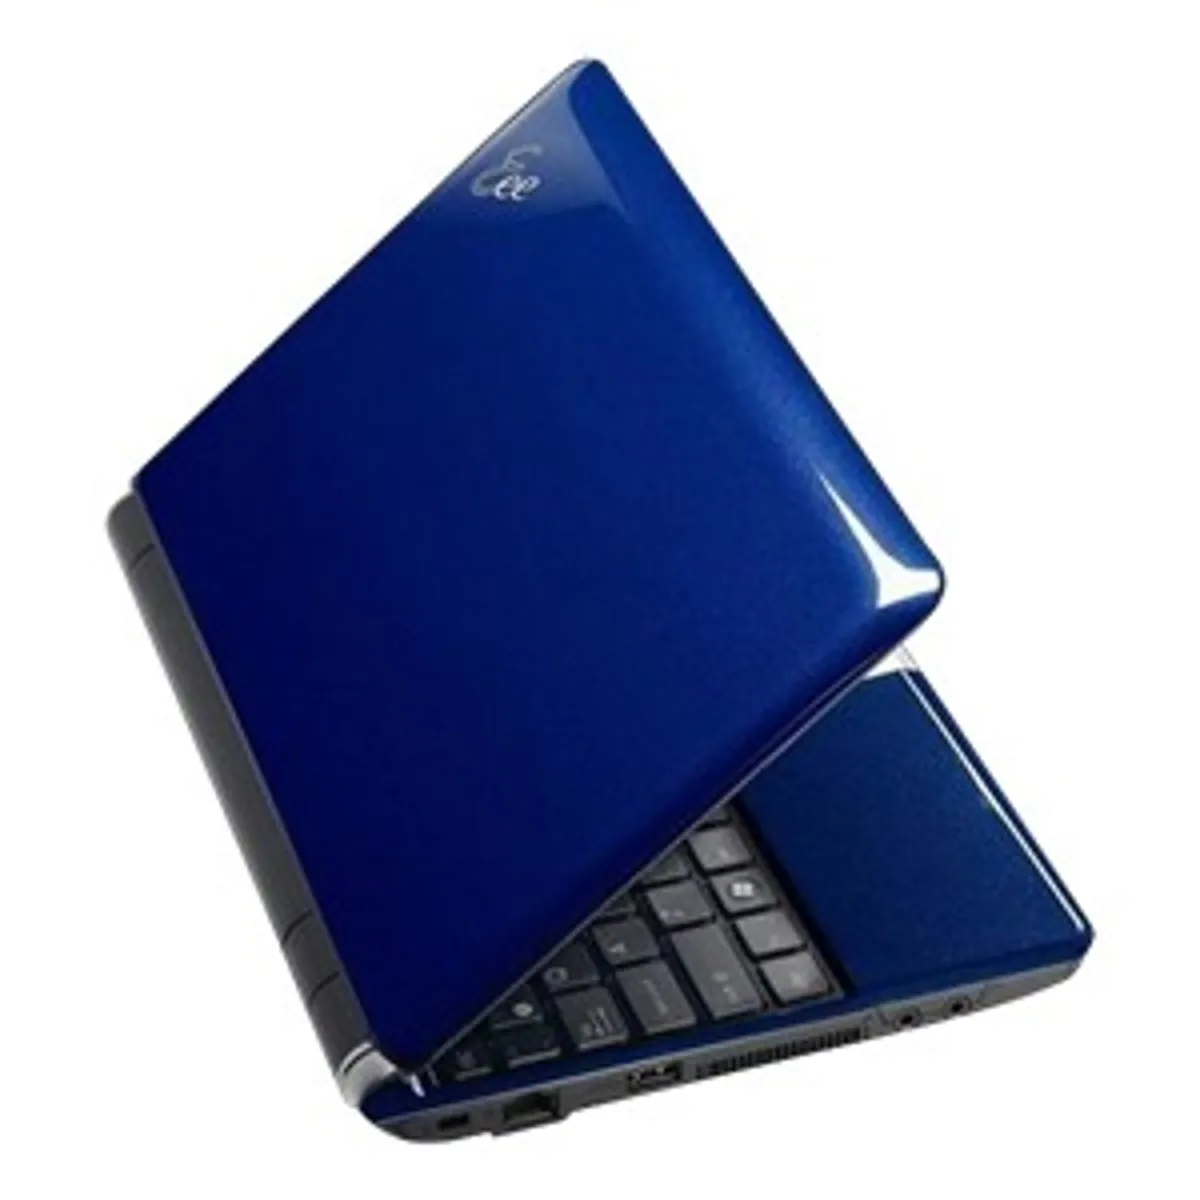 EEEPC1000BLK001X - Eee PC 1000 Netbook